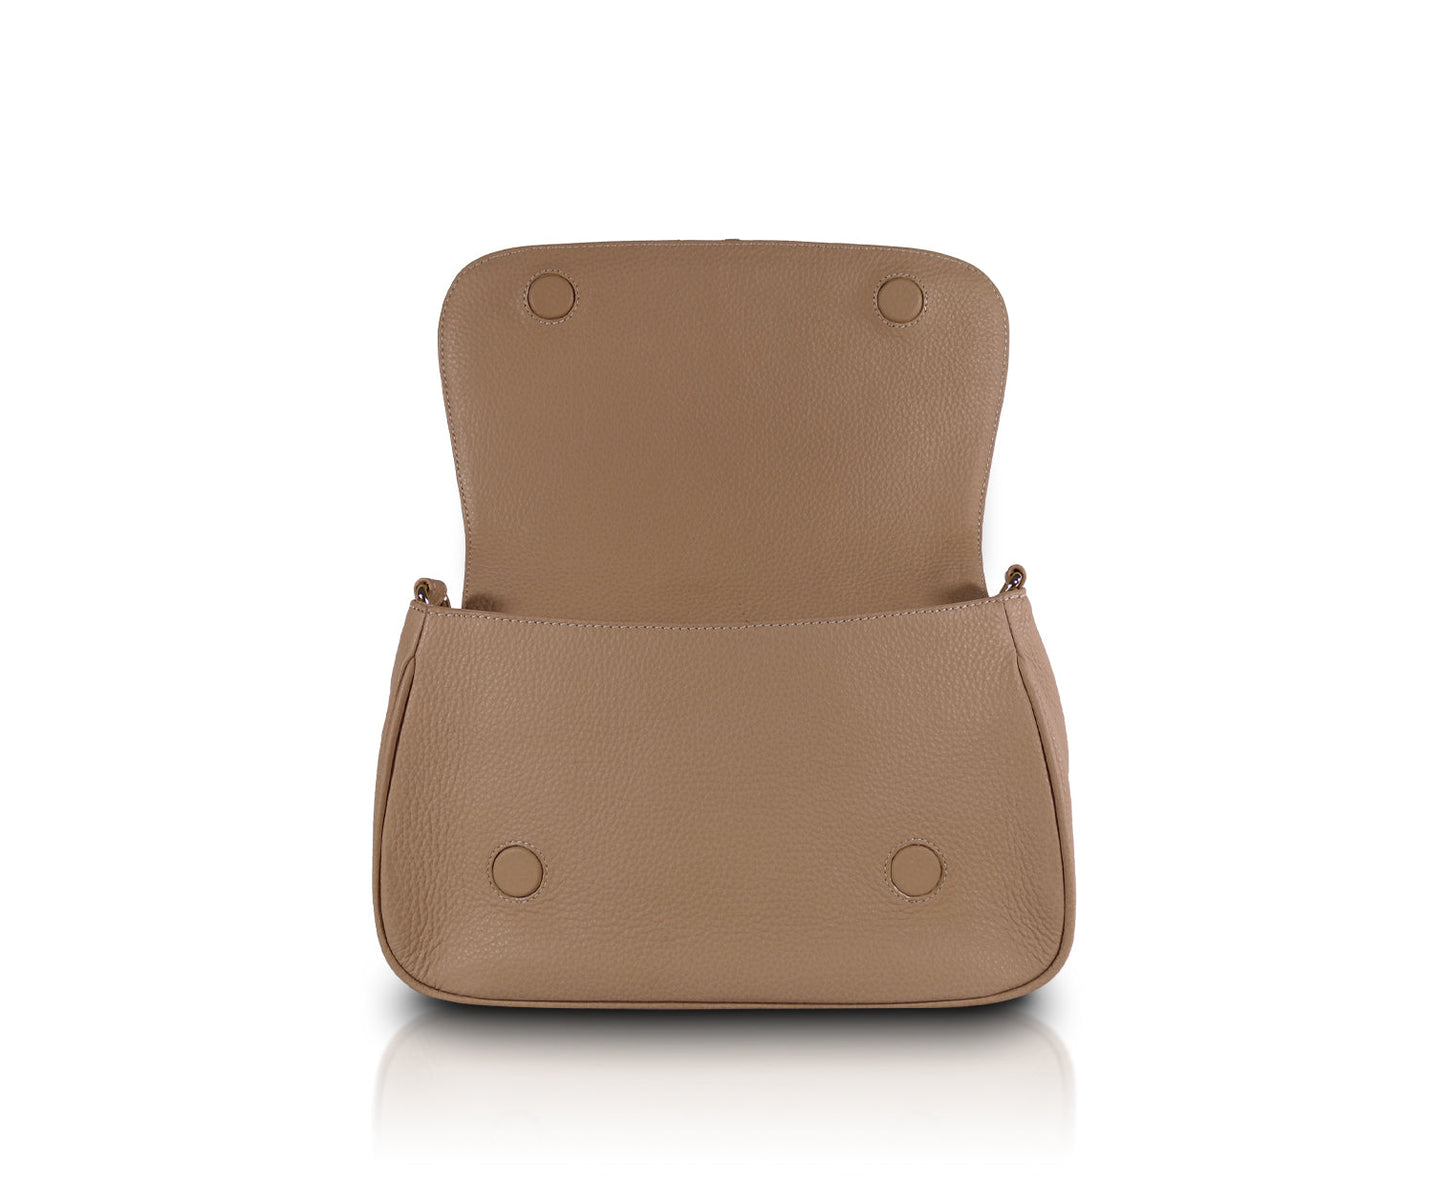 Leather Chic Shoulder Bag | Mustard